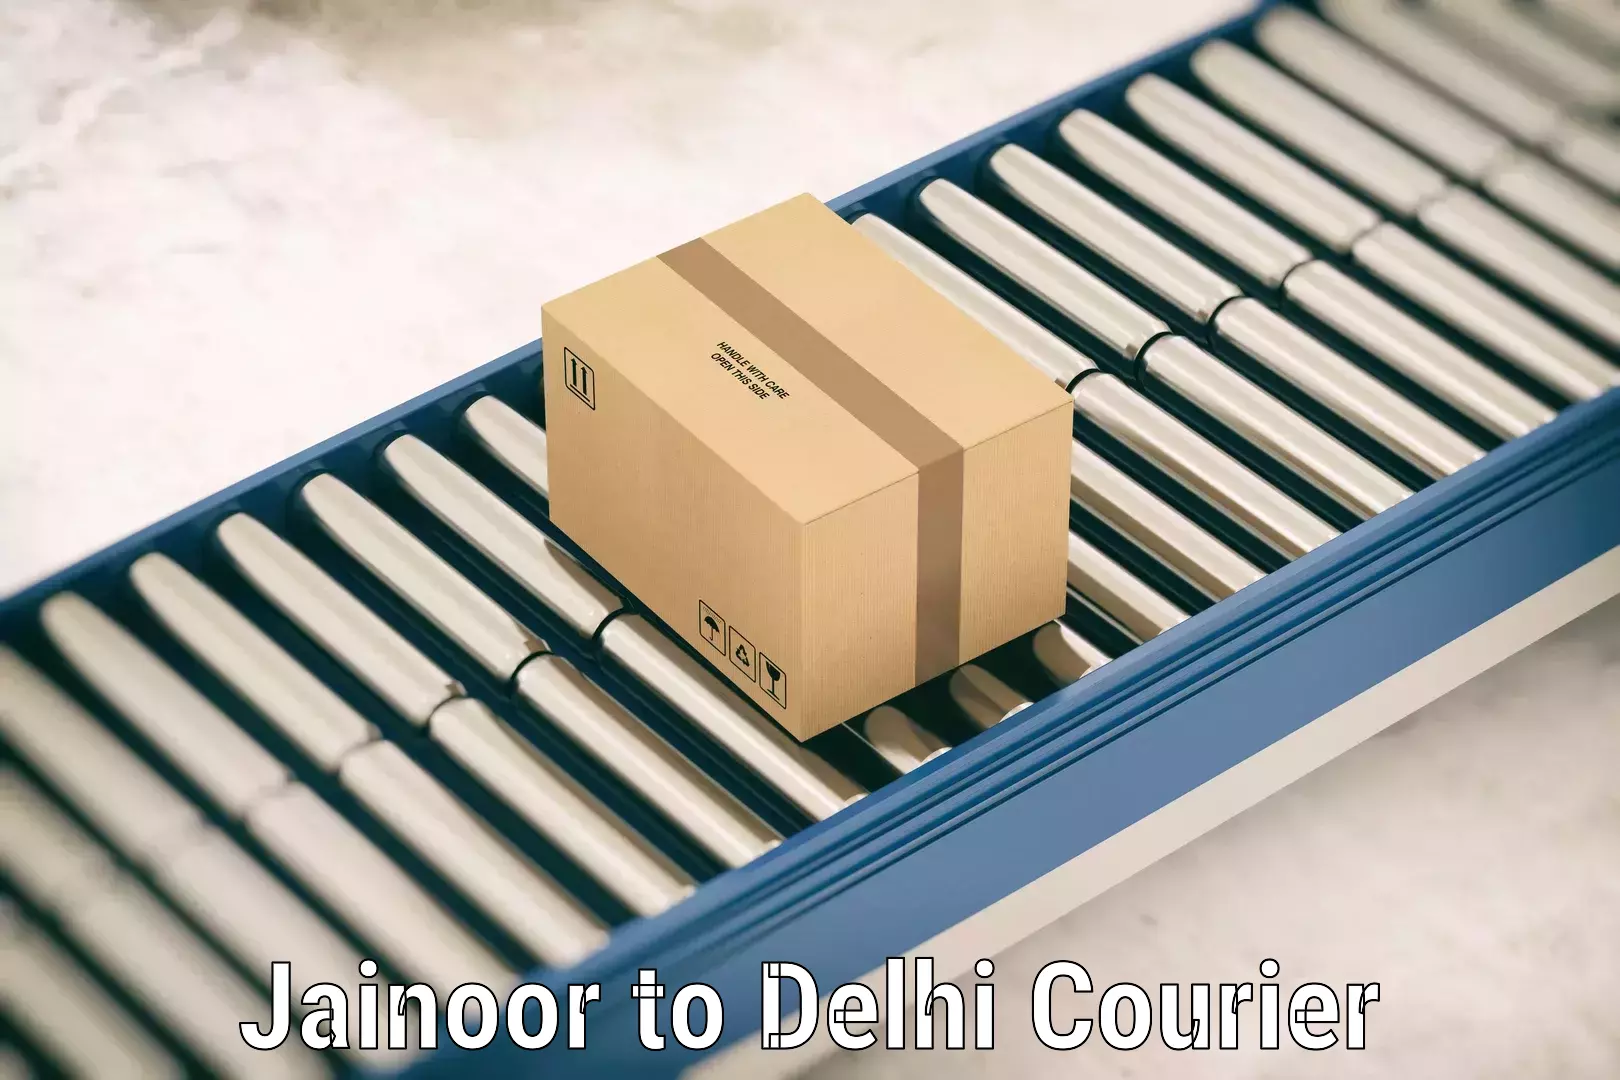 Regional luggage transport Jainoor to East Delhi